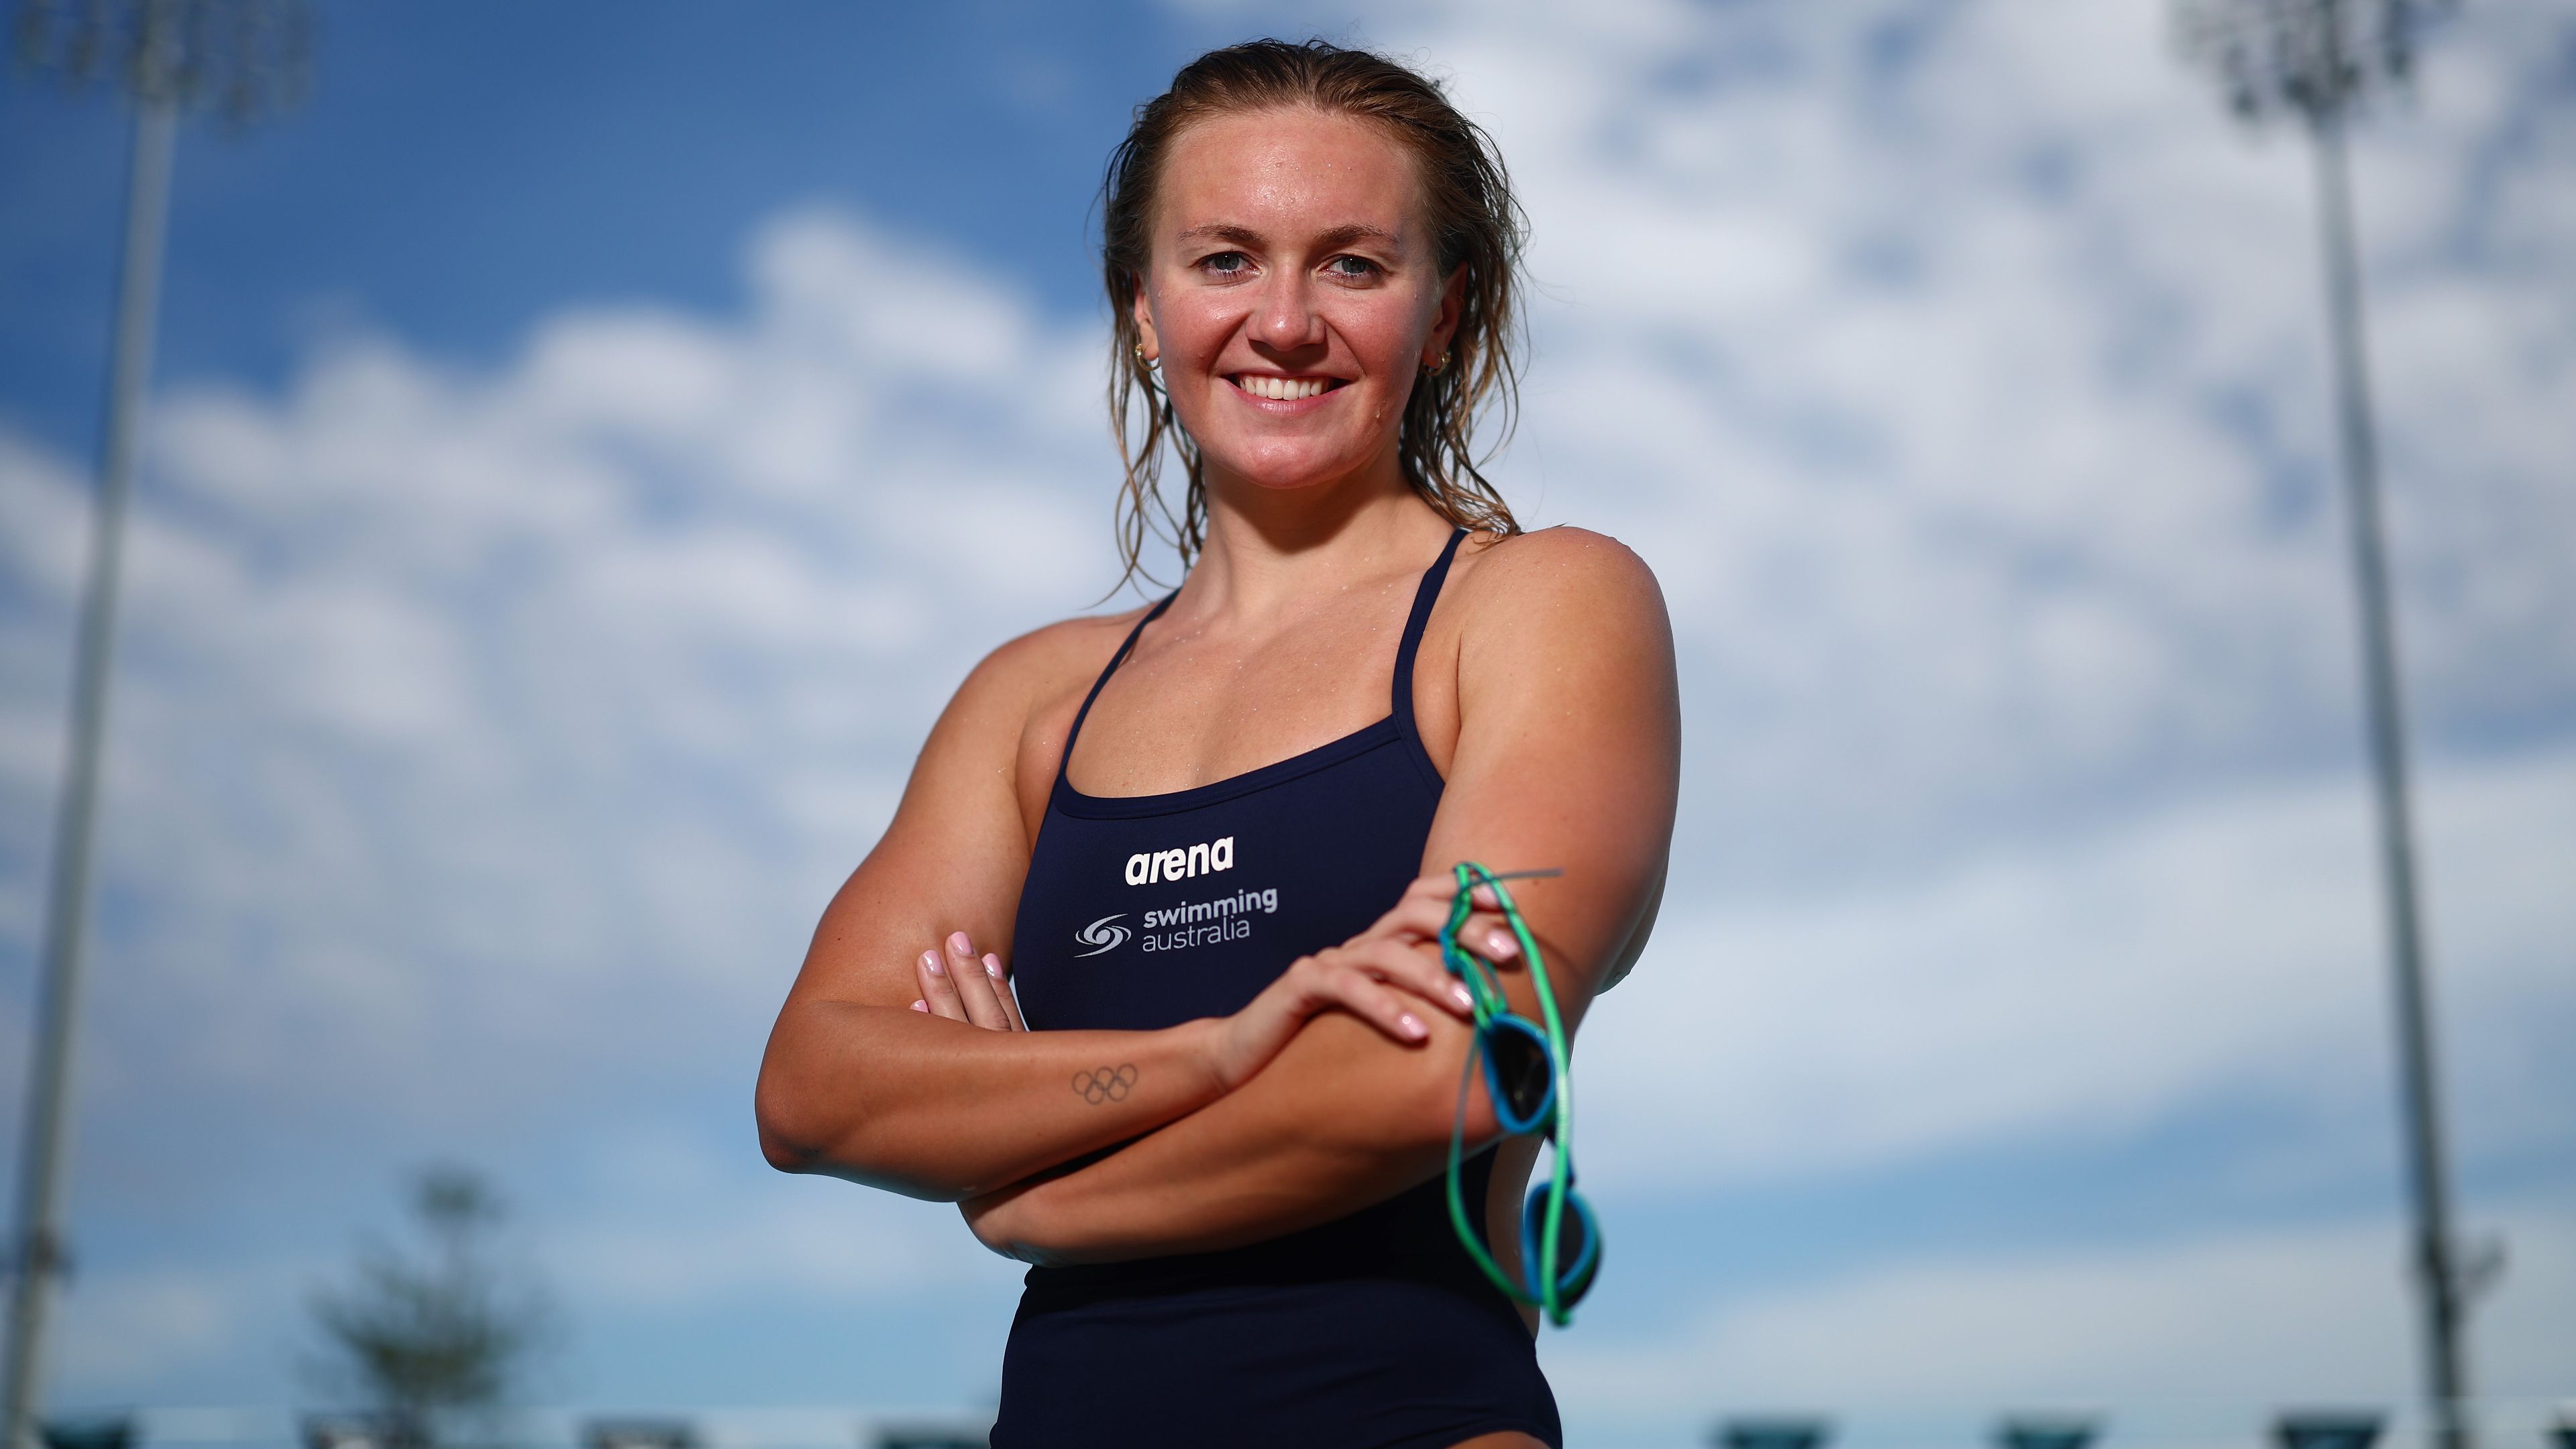 Úszás – Rendkívül gyors futamokra számít a címvédő Ariarne Titmus